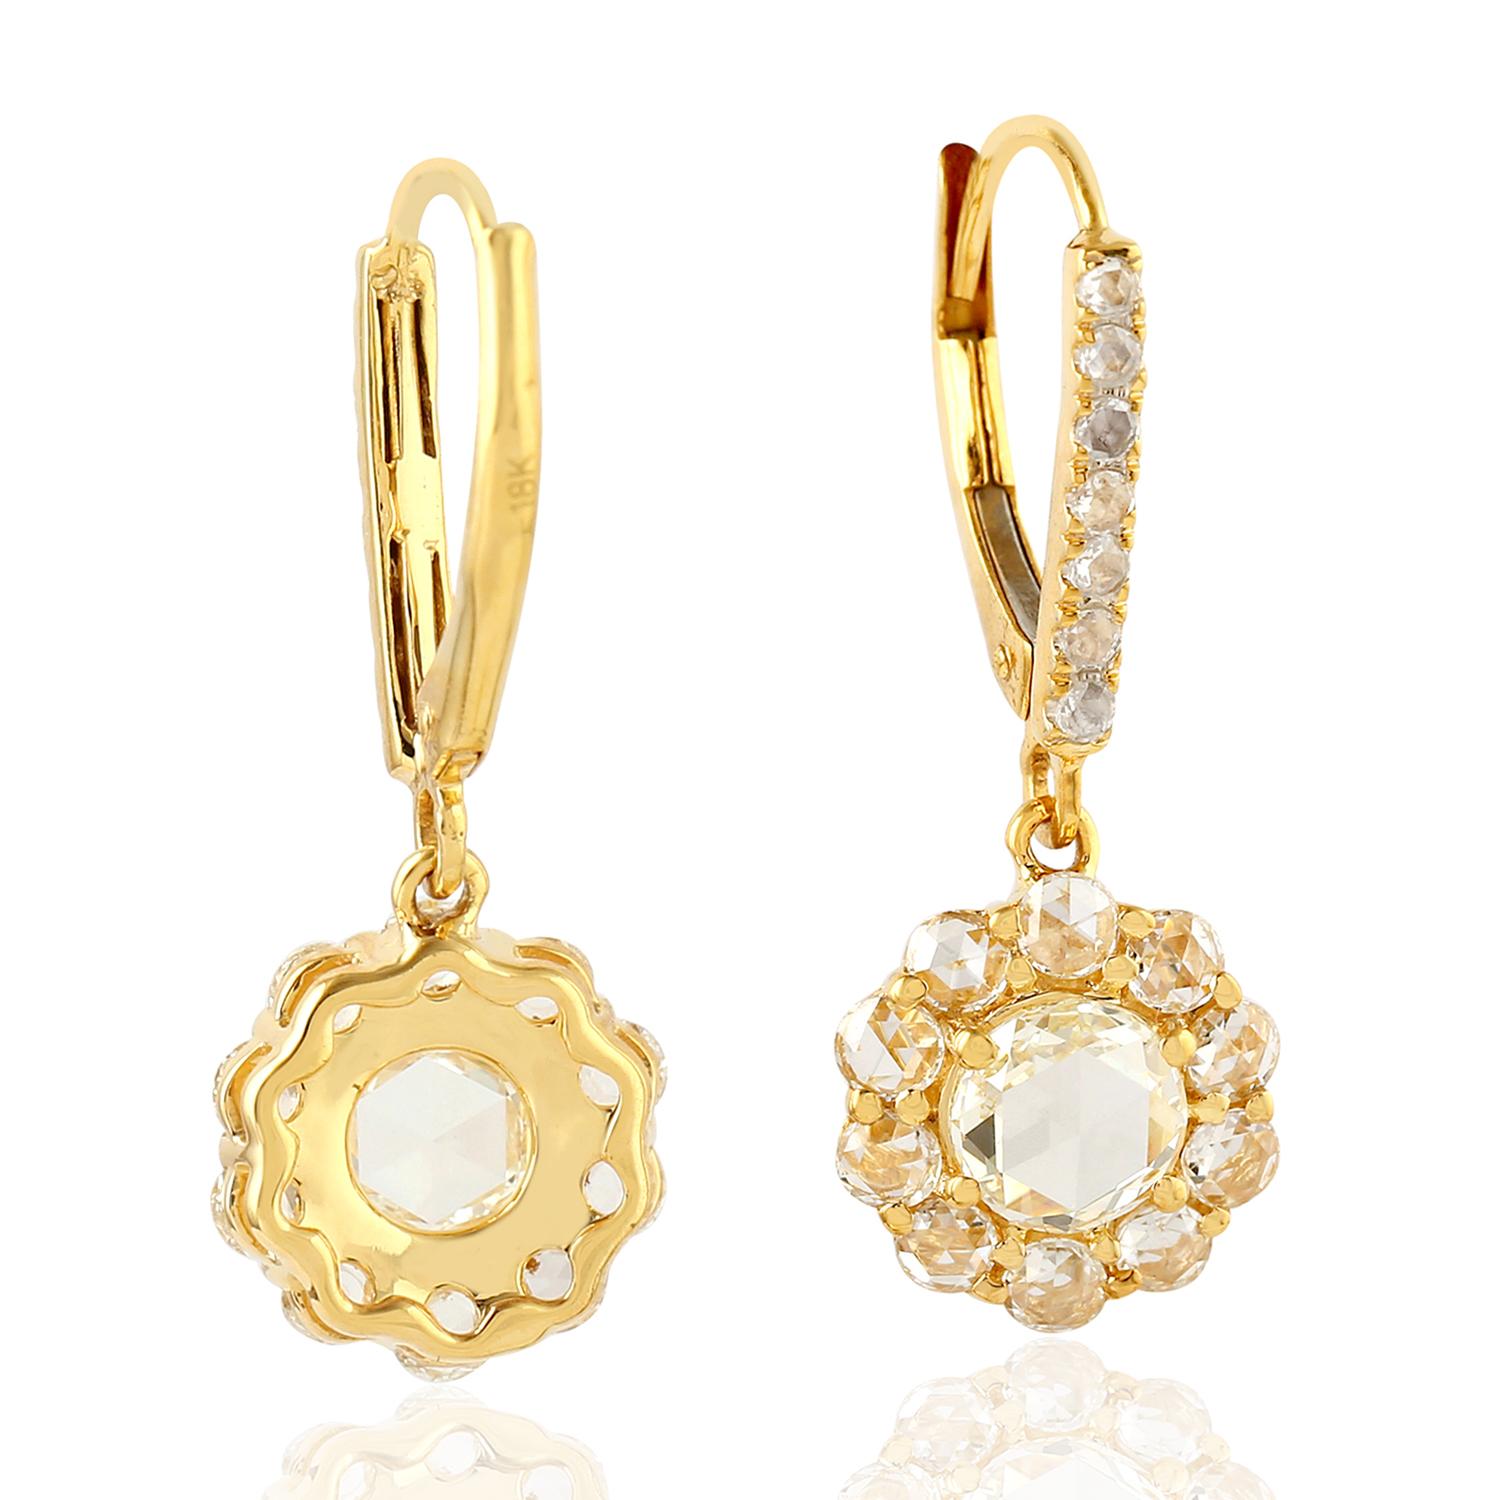 Diese Ohrringe mit Diamanten im Rosenschliff sind aus 18-karätigem Gold handgefertigt und mit Diamanten von 1,84 Karat besetzt. 

FOLGEN  MEGHNA JEWELS Storefront, um die neueste Kollektion und exklusive Stücke zu sehen.  Meghna Jewels ist stolz